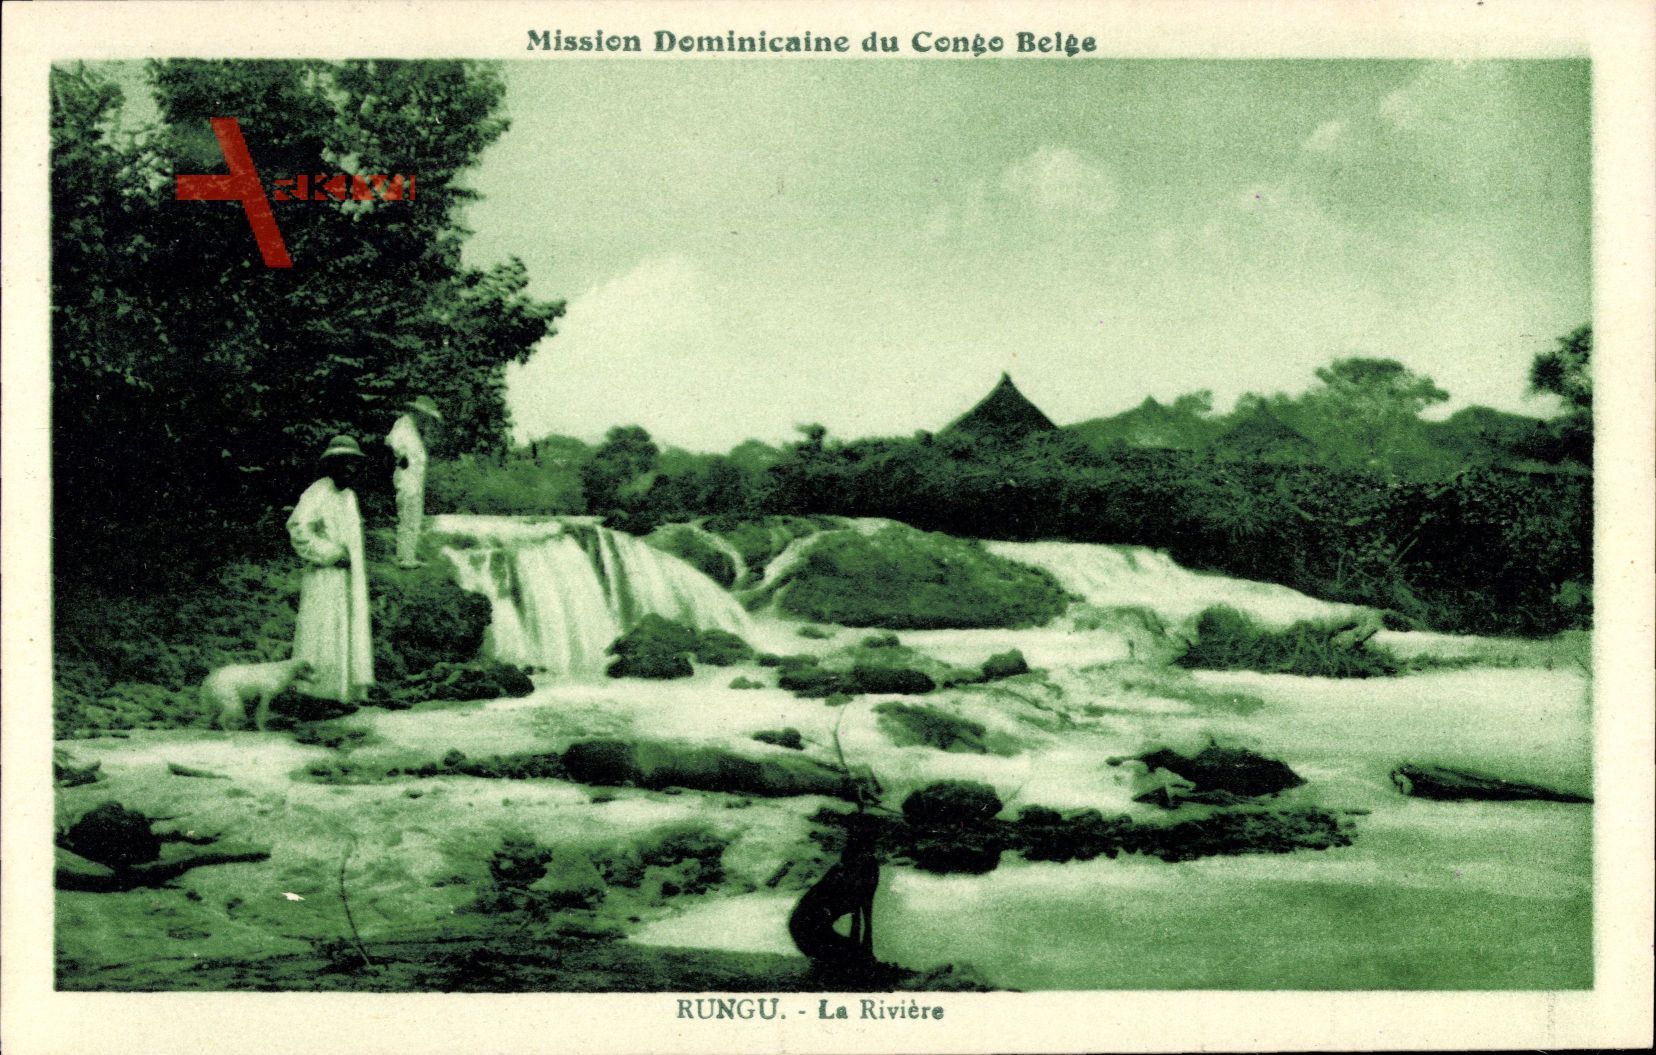 Rungu DR Kongo Zaire, Mission Dominicaine du Congo Belge, La Rivière